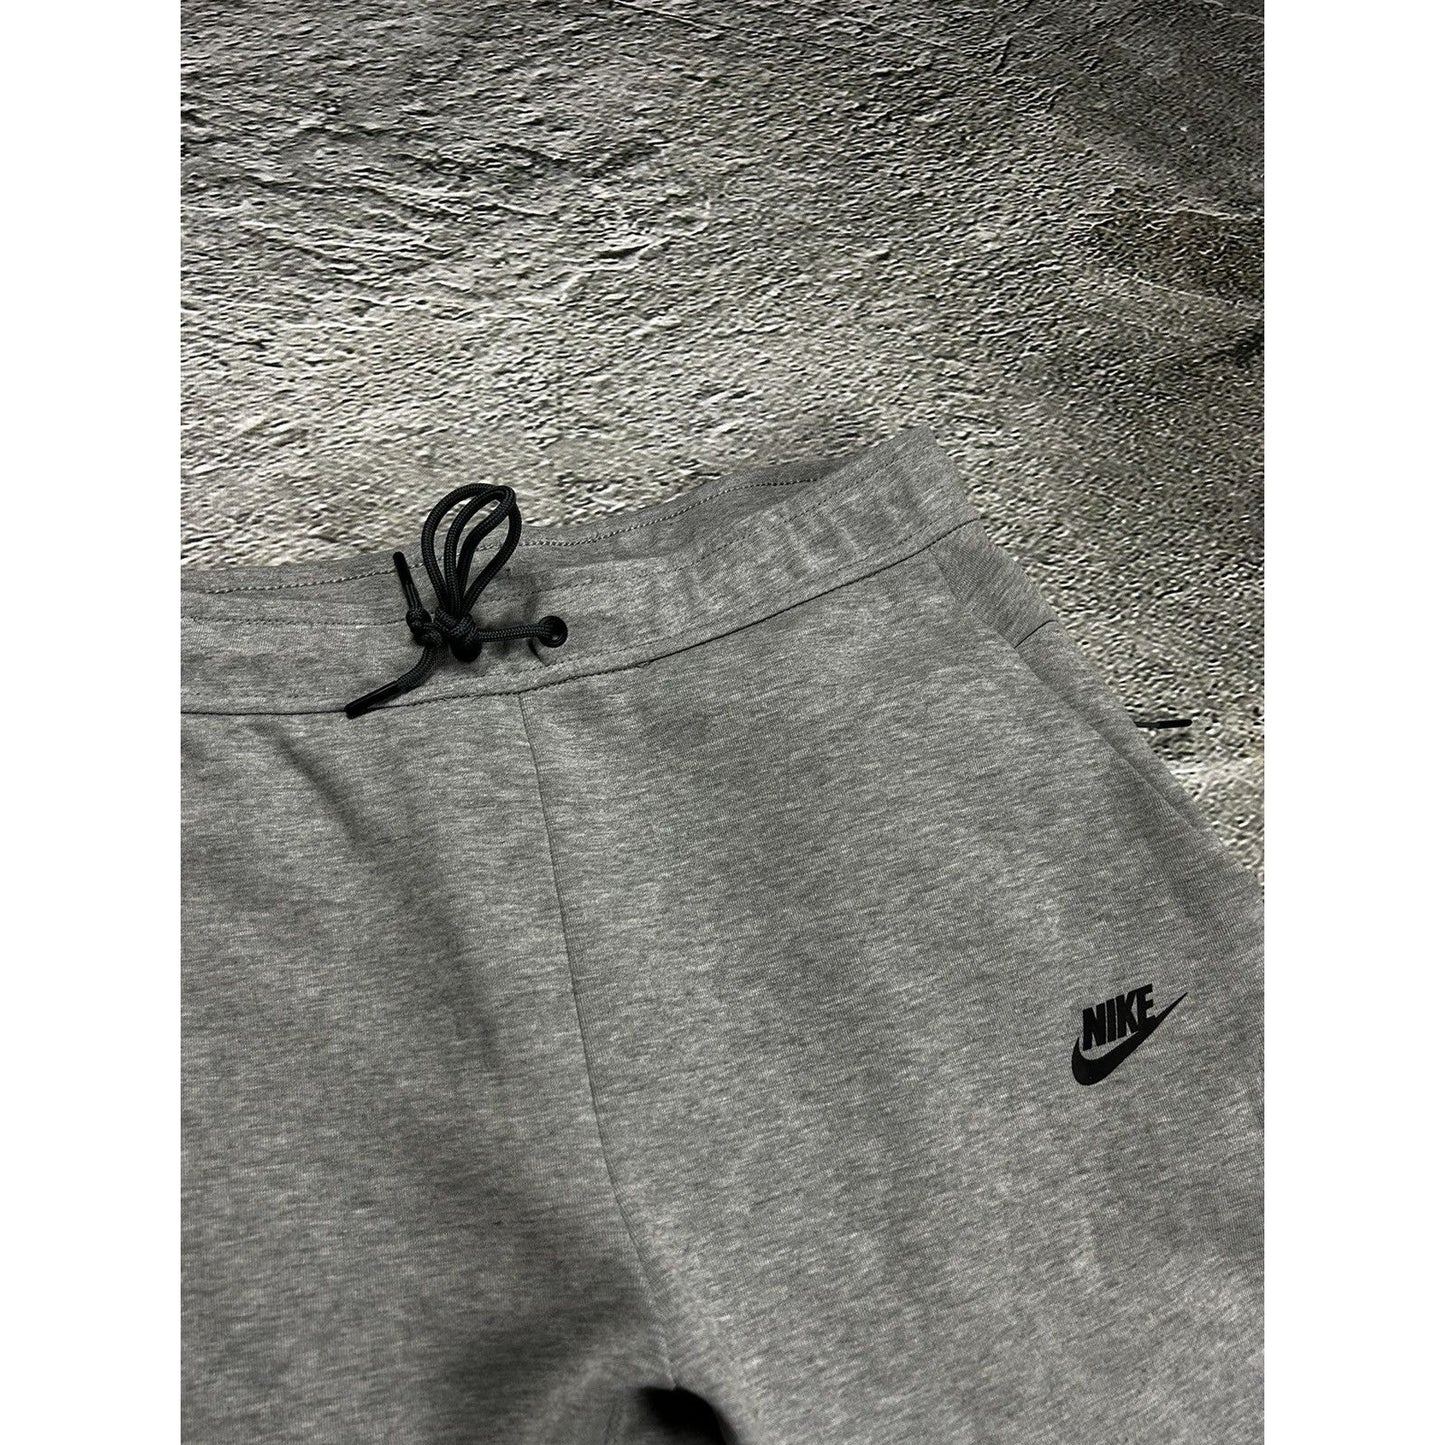 Nike tech fleece sweatpants drill grey